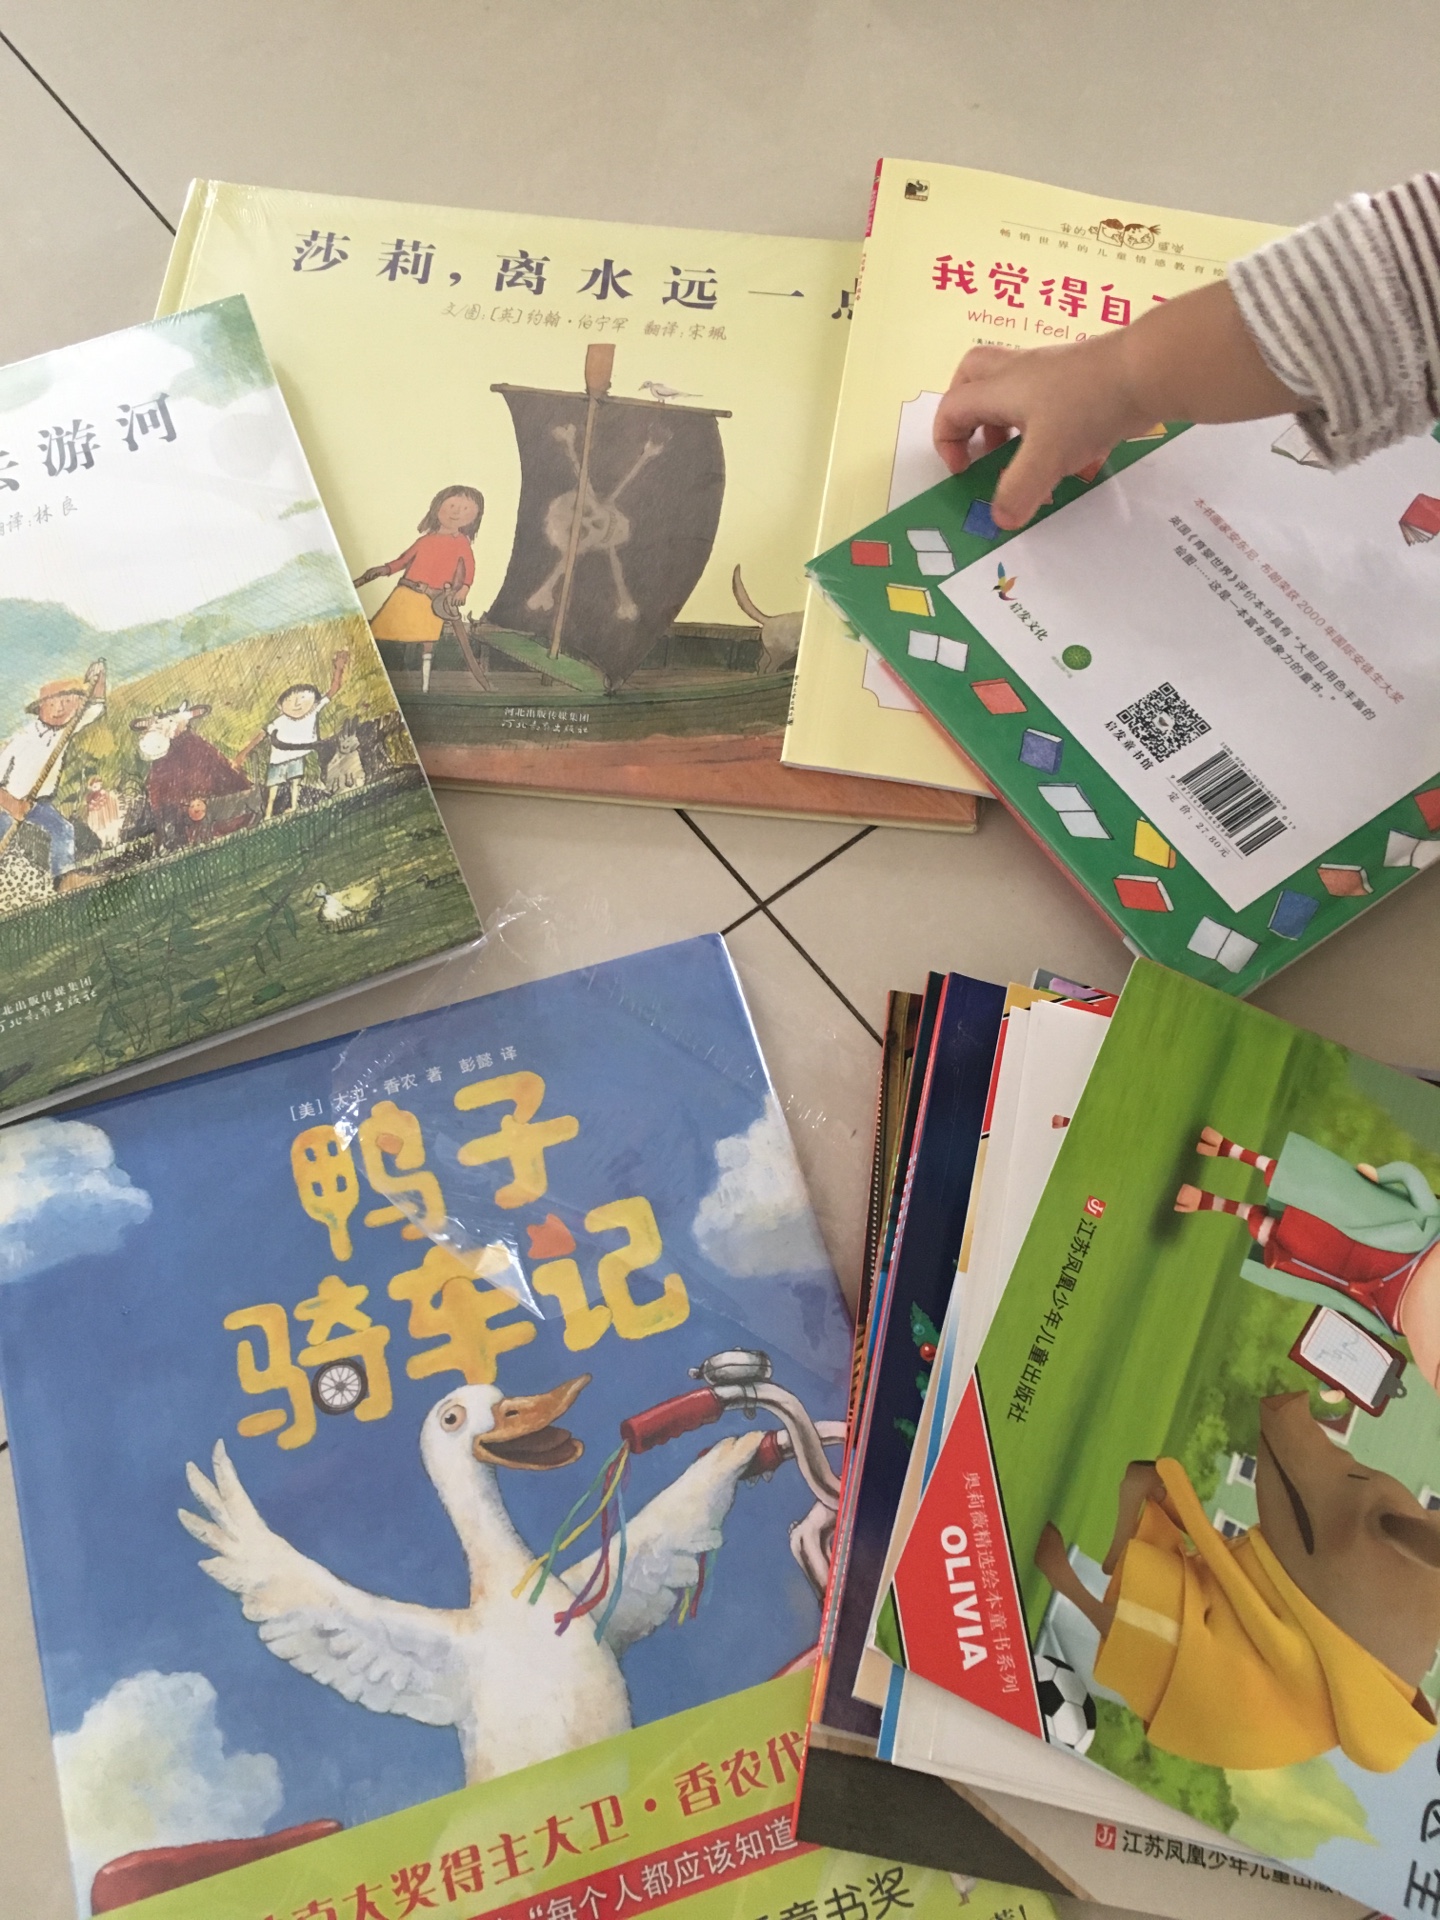 中英文双语的、情绪管理书、是成套的、只入了一本、凑单的！！快递一如既往的好、书的质量也好！都有塑封！